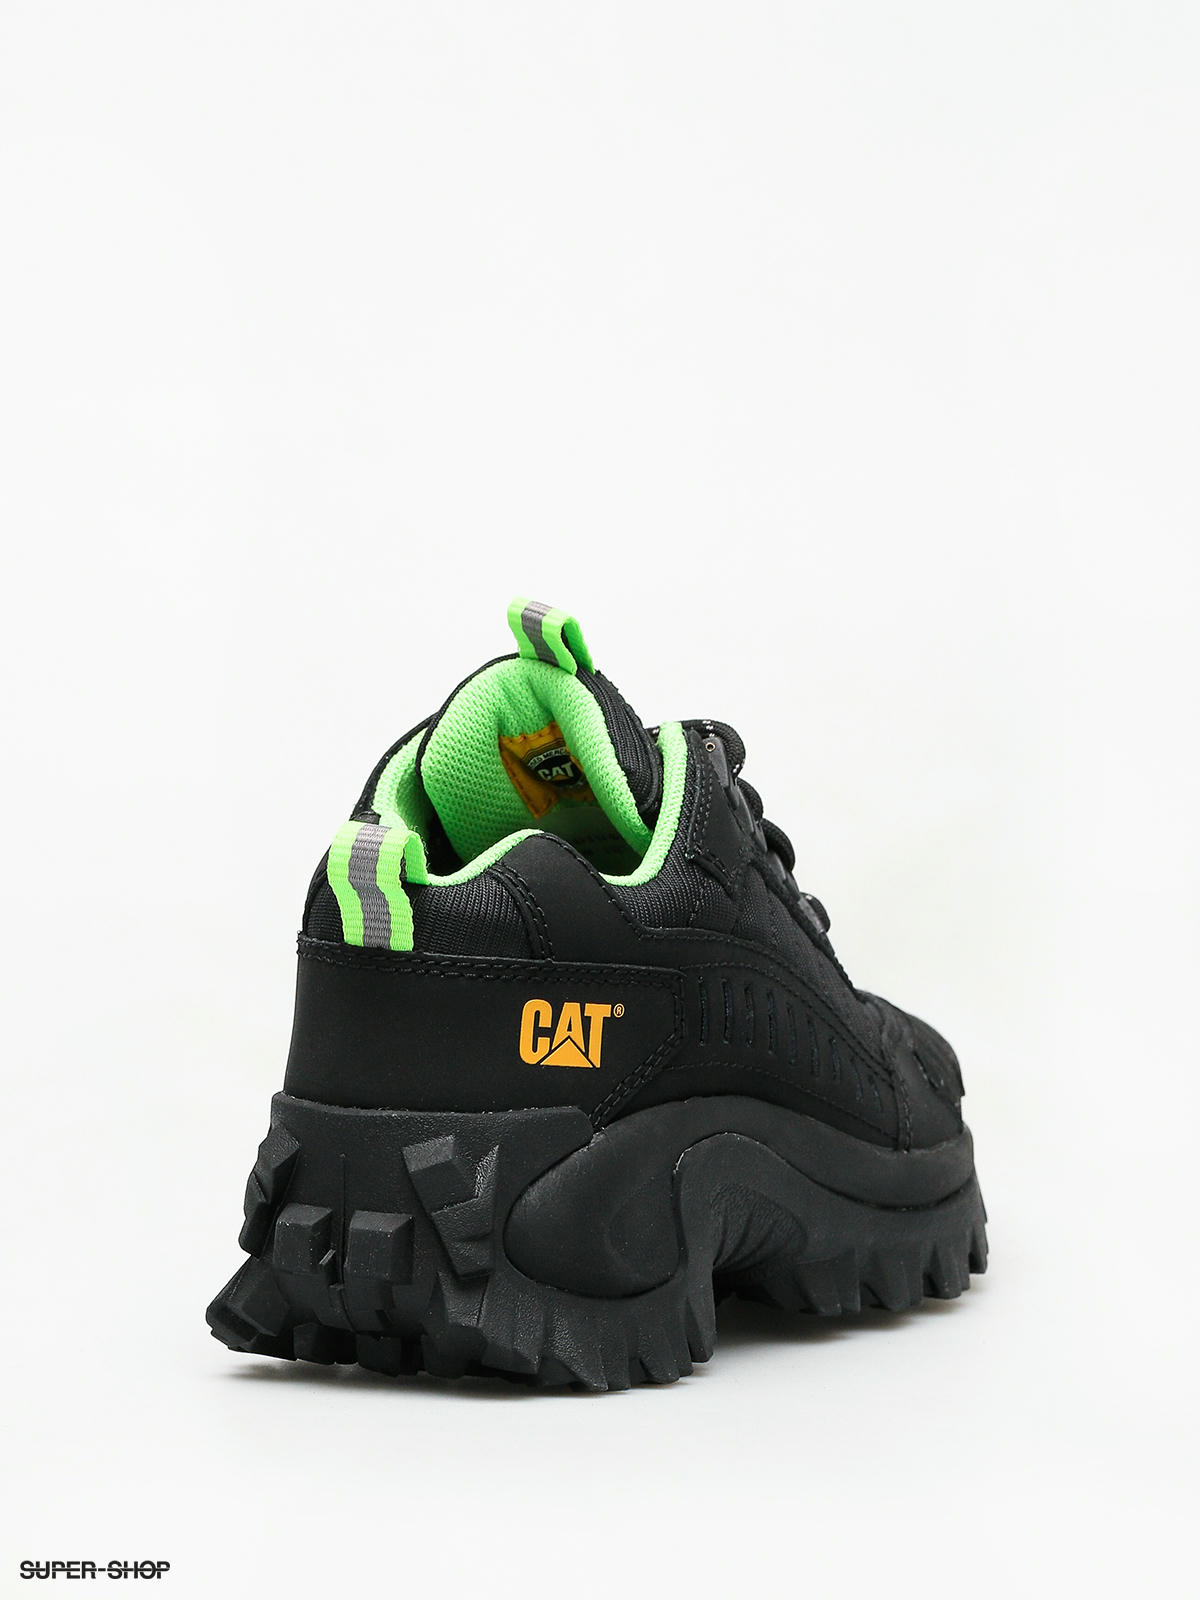 cat intruder shoes black